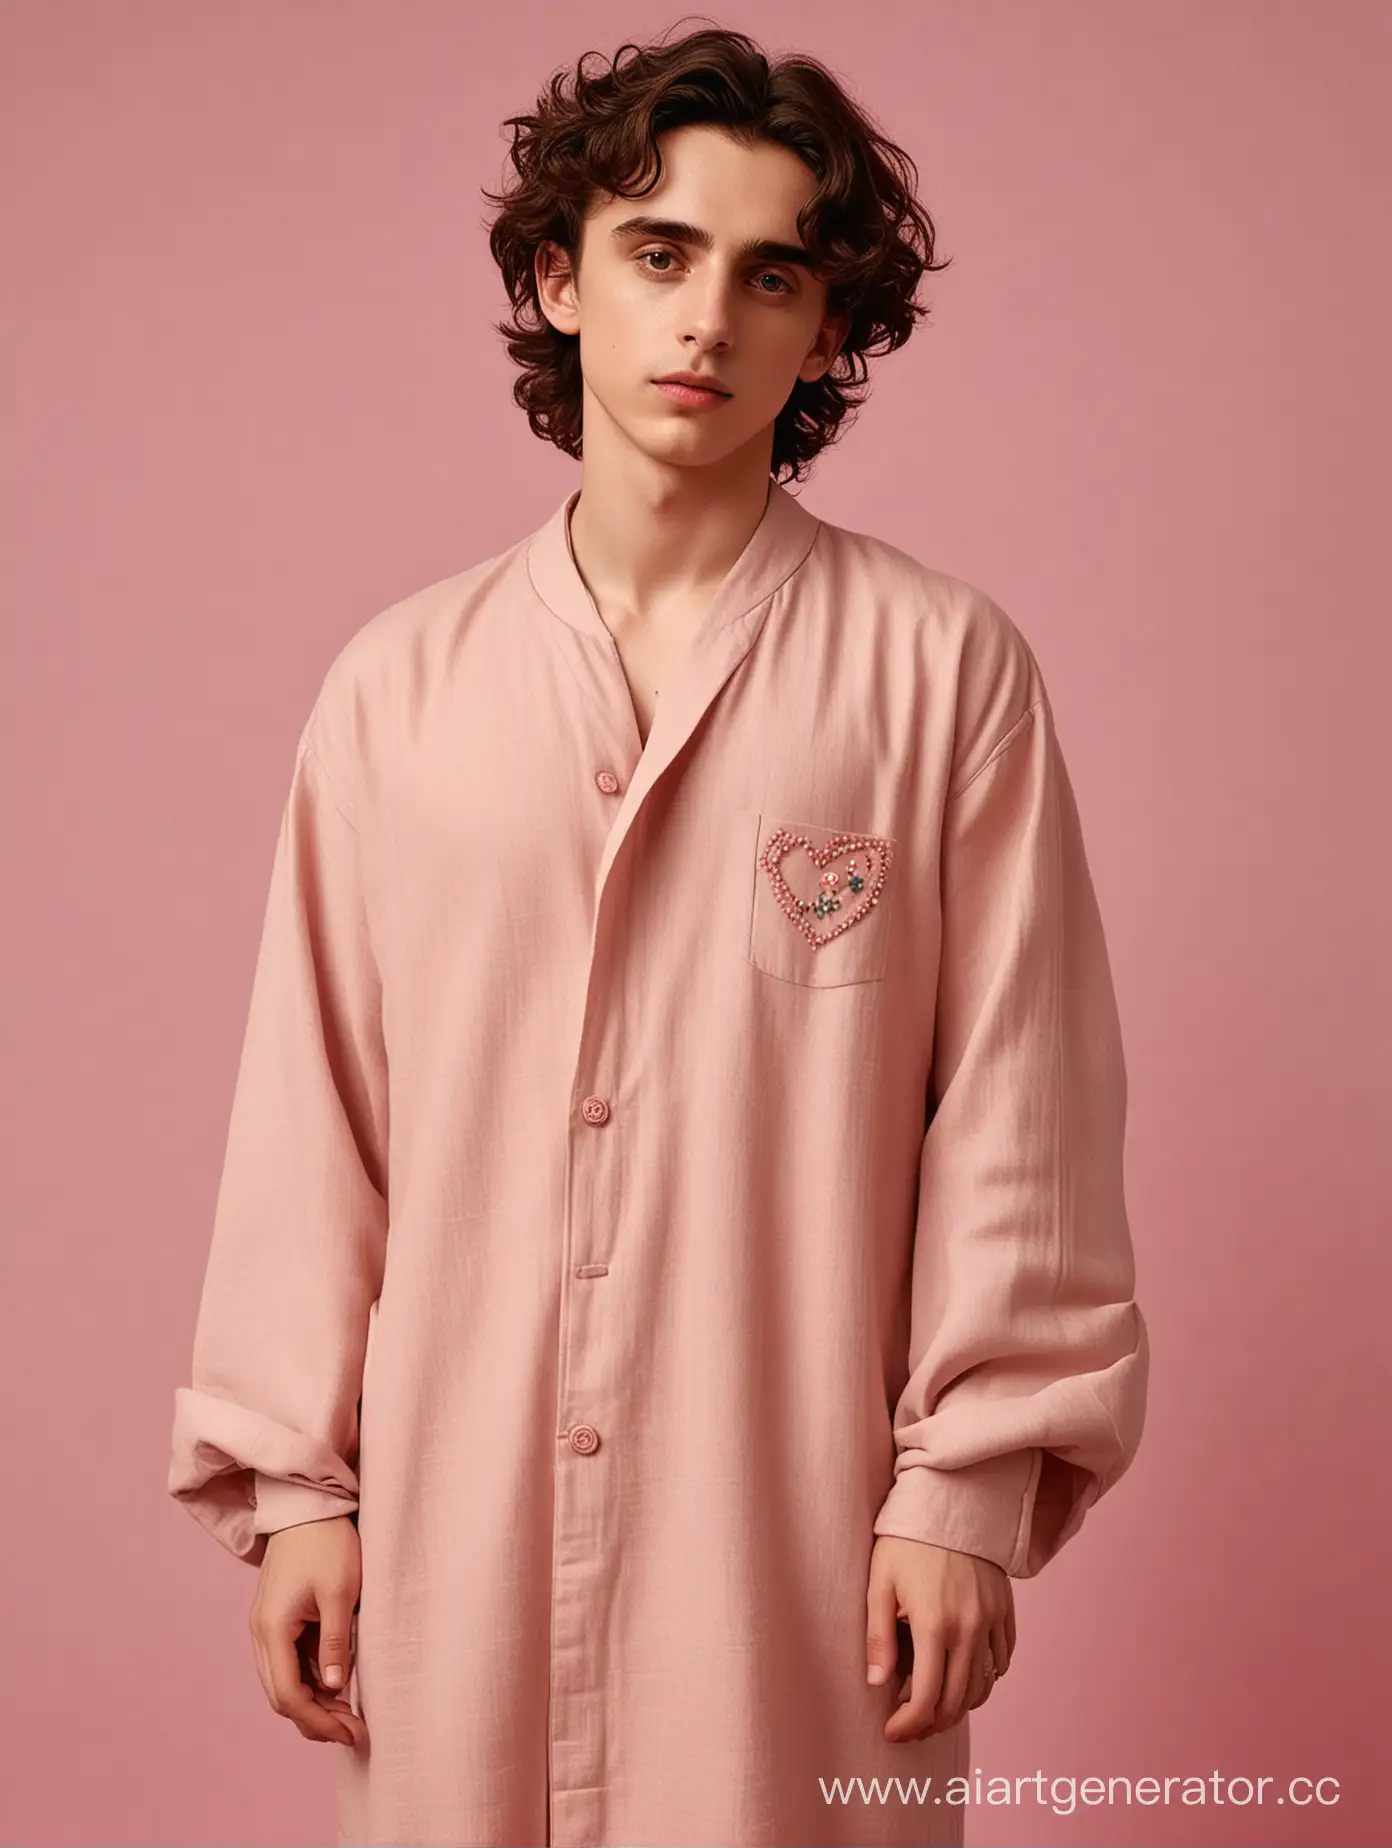 Timothee-Chalamet-Poses-in-HeartAdorned-Beige-Linen-Abaya-in-Pink-Room